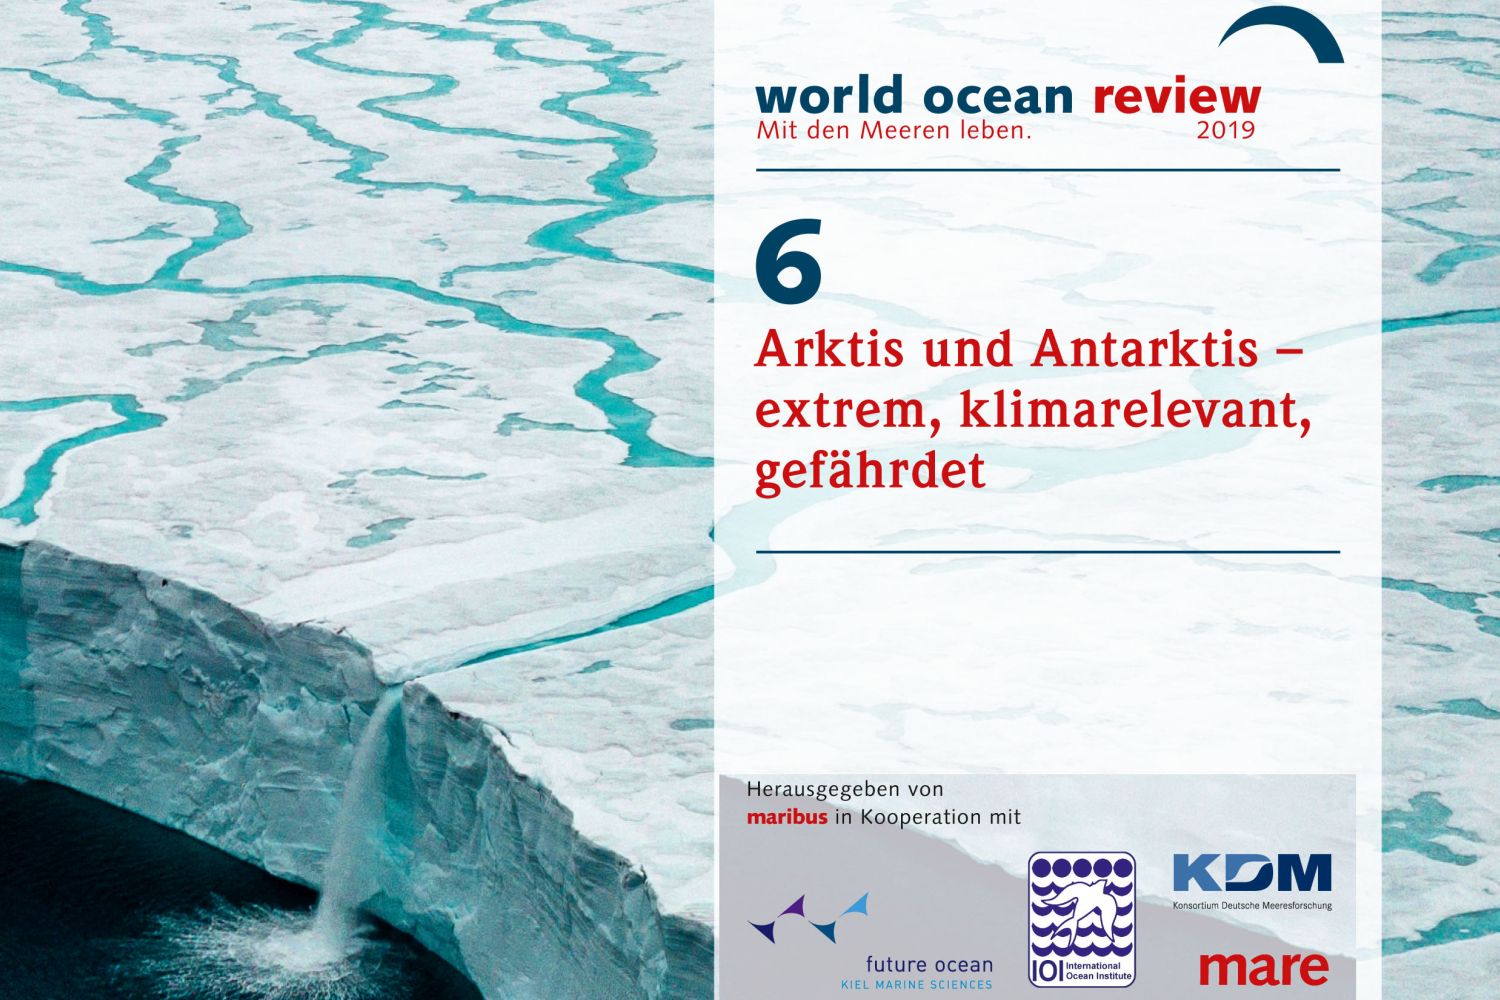 Coverbild des World Ocean Reviews 6: Arktis und Antarktis – extrem, klimarelevant, gefährdet